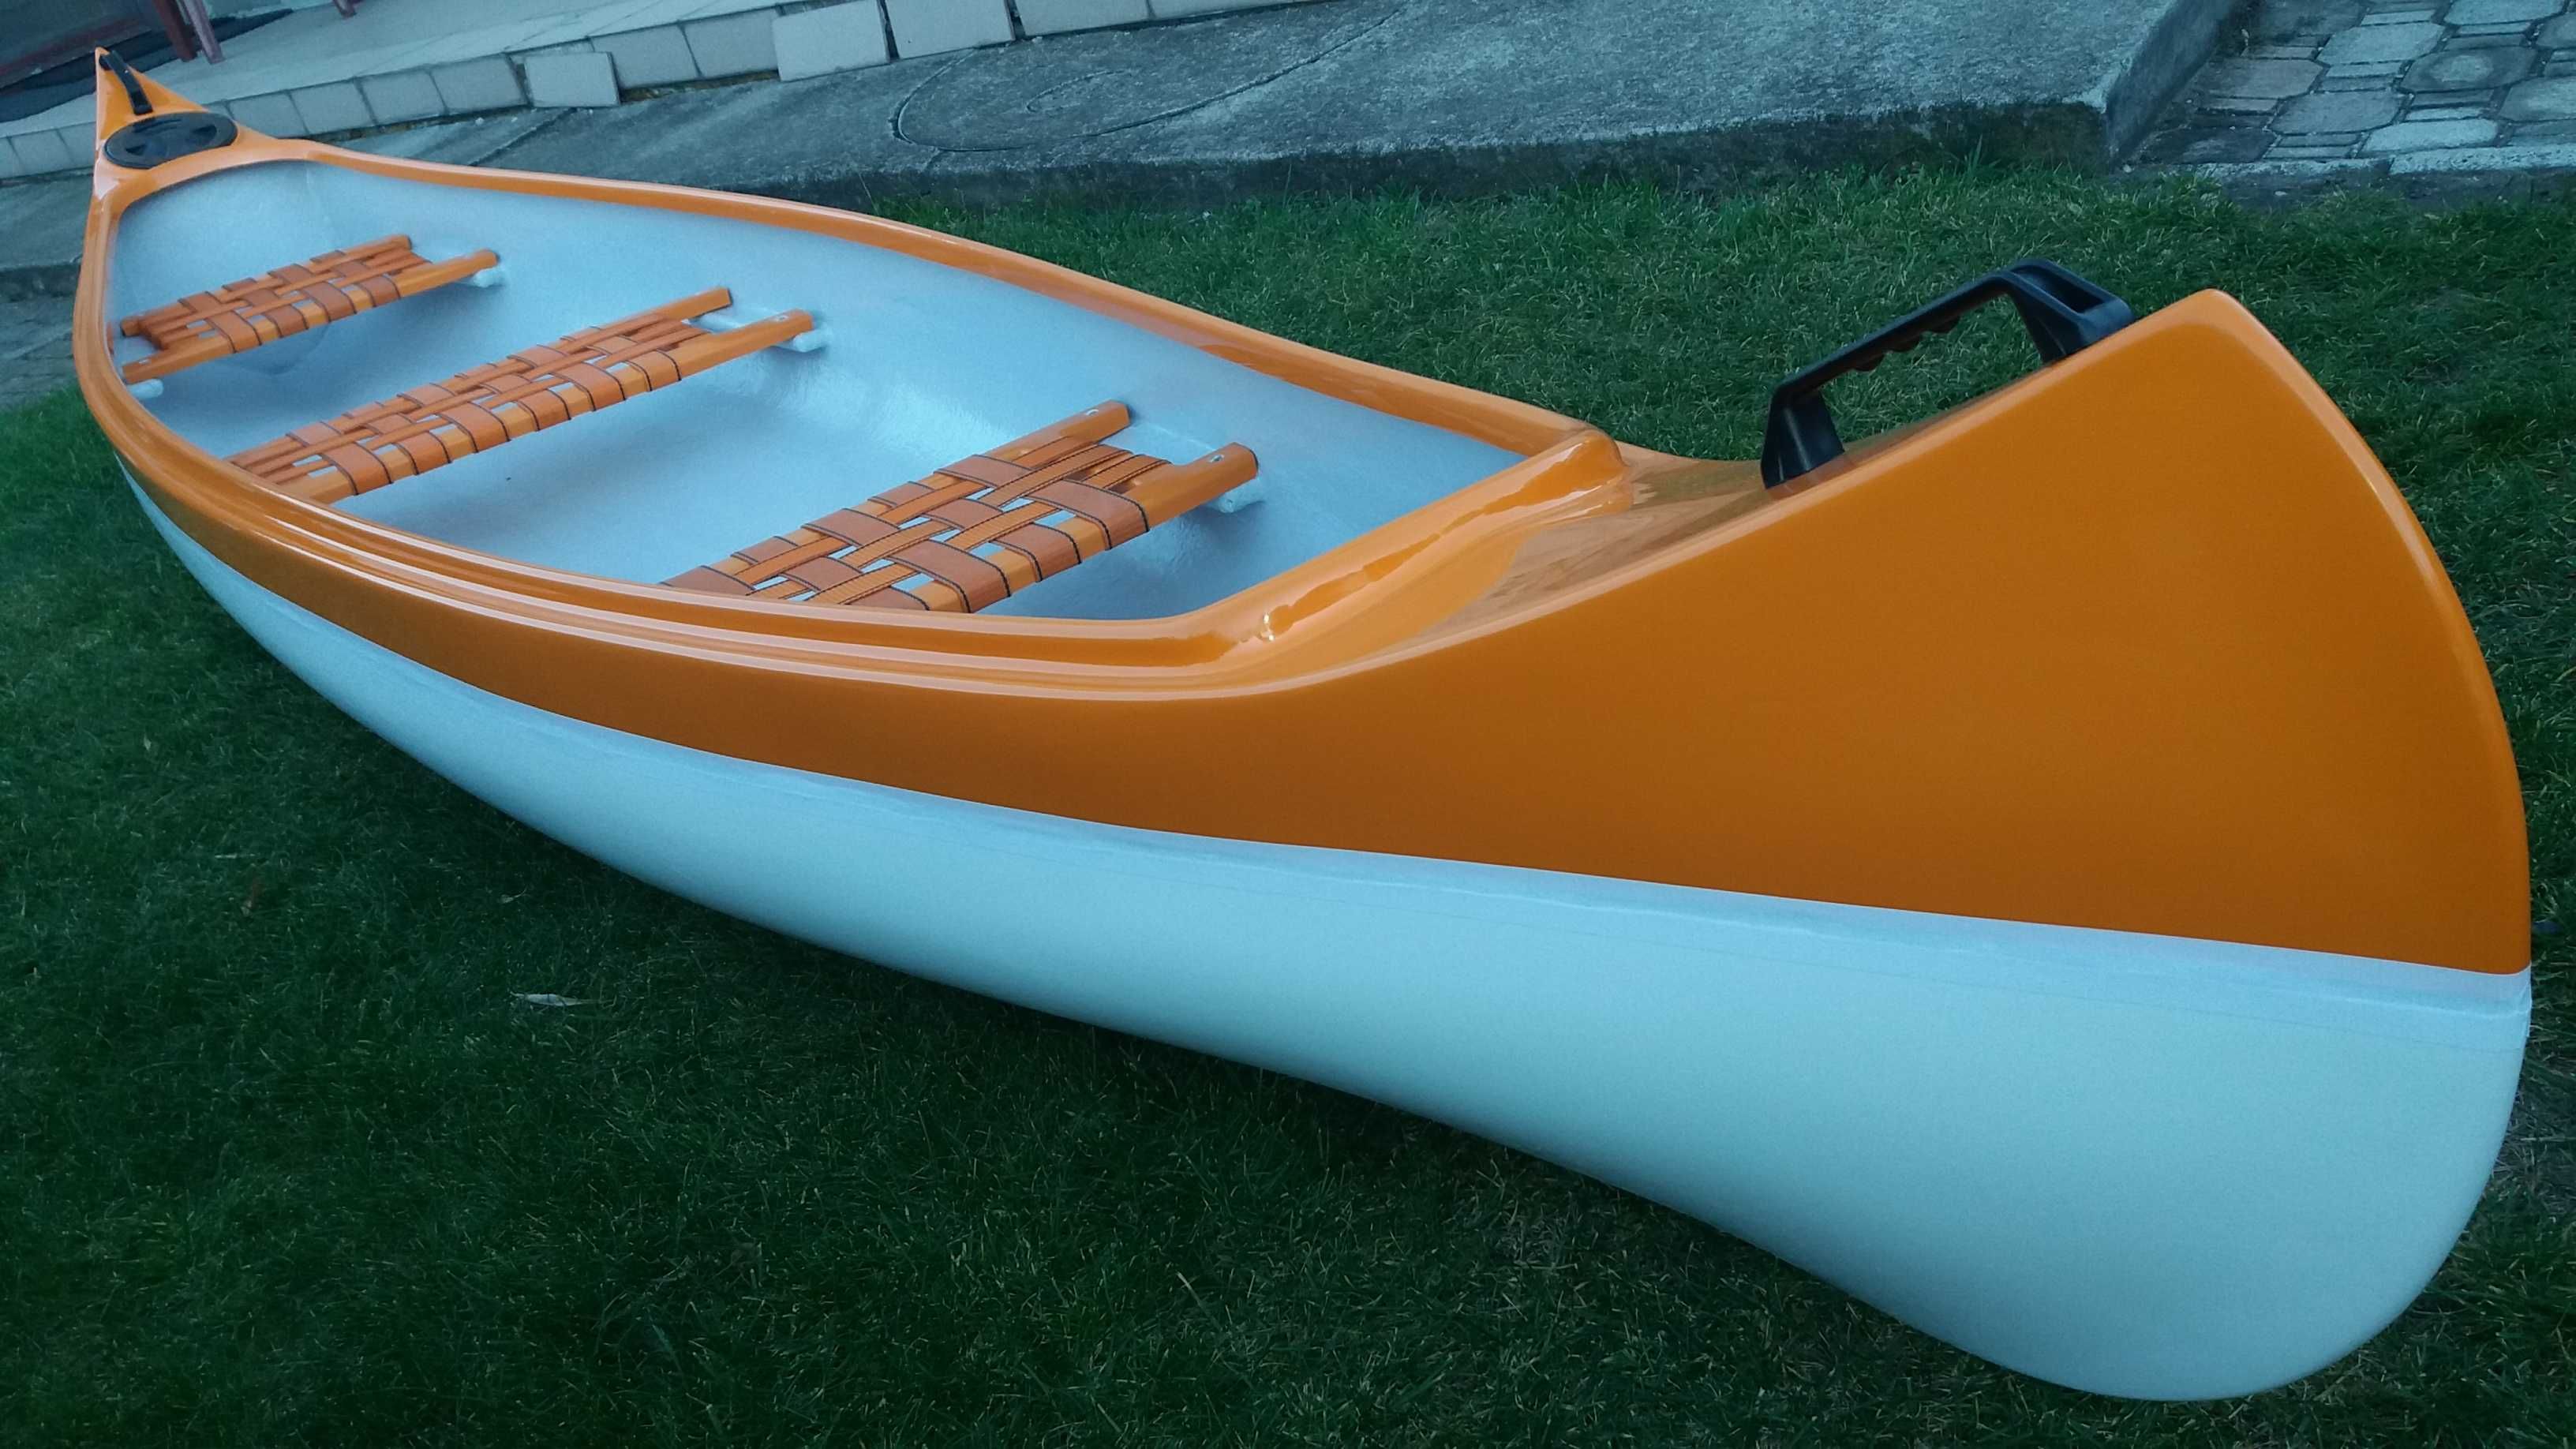 Kanadyjka Kanu Canoe Kajak łódka nowa dł.412 waga 28kg